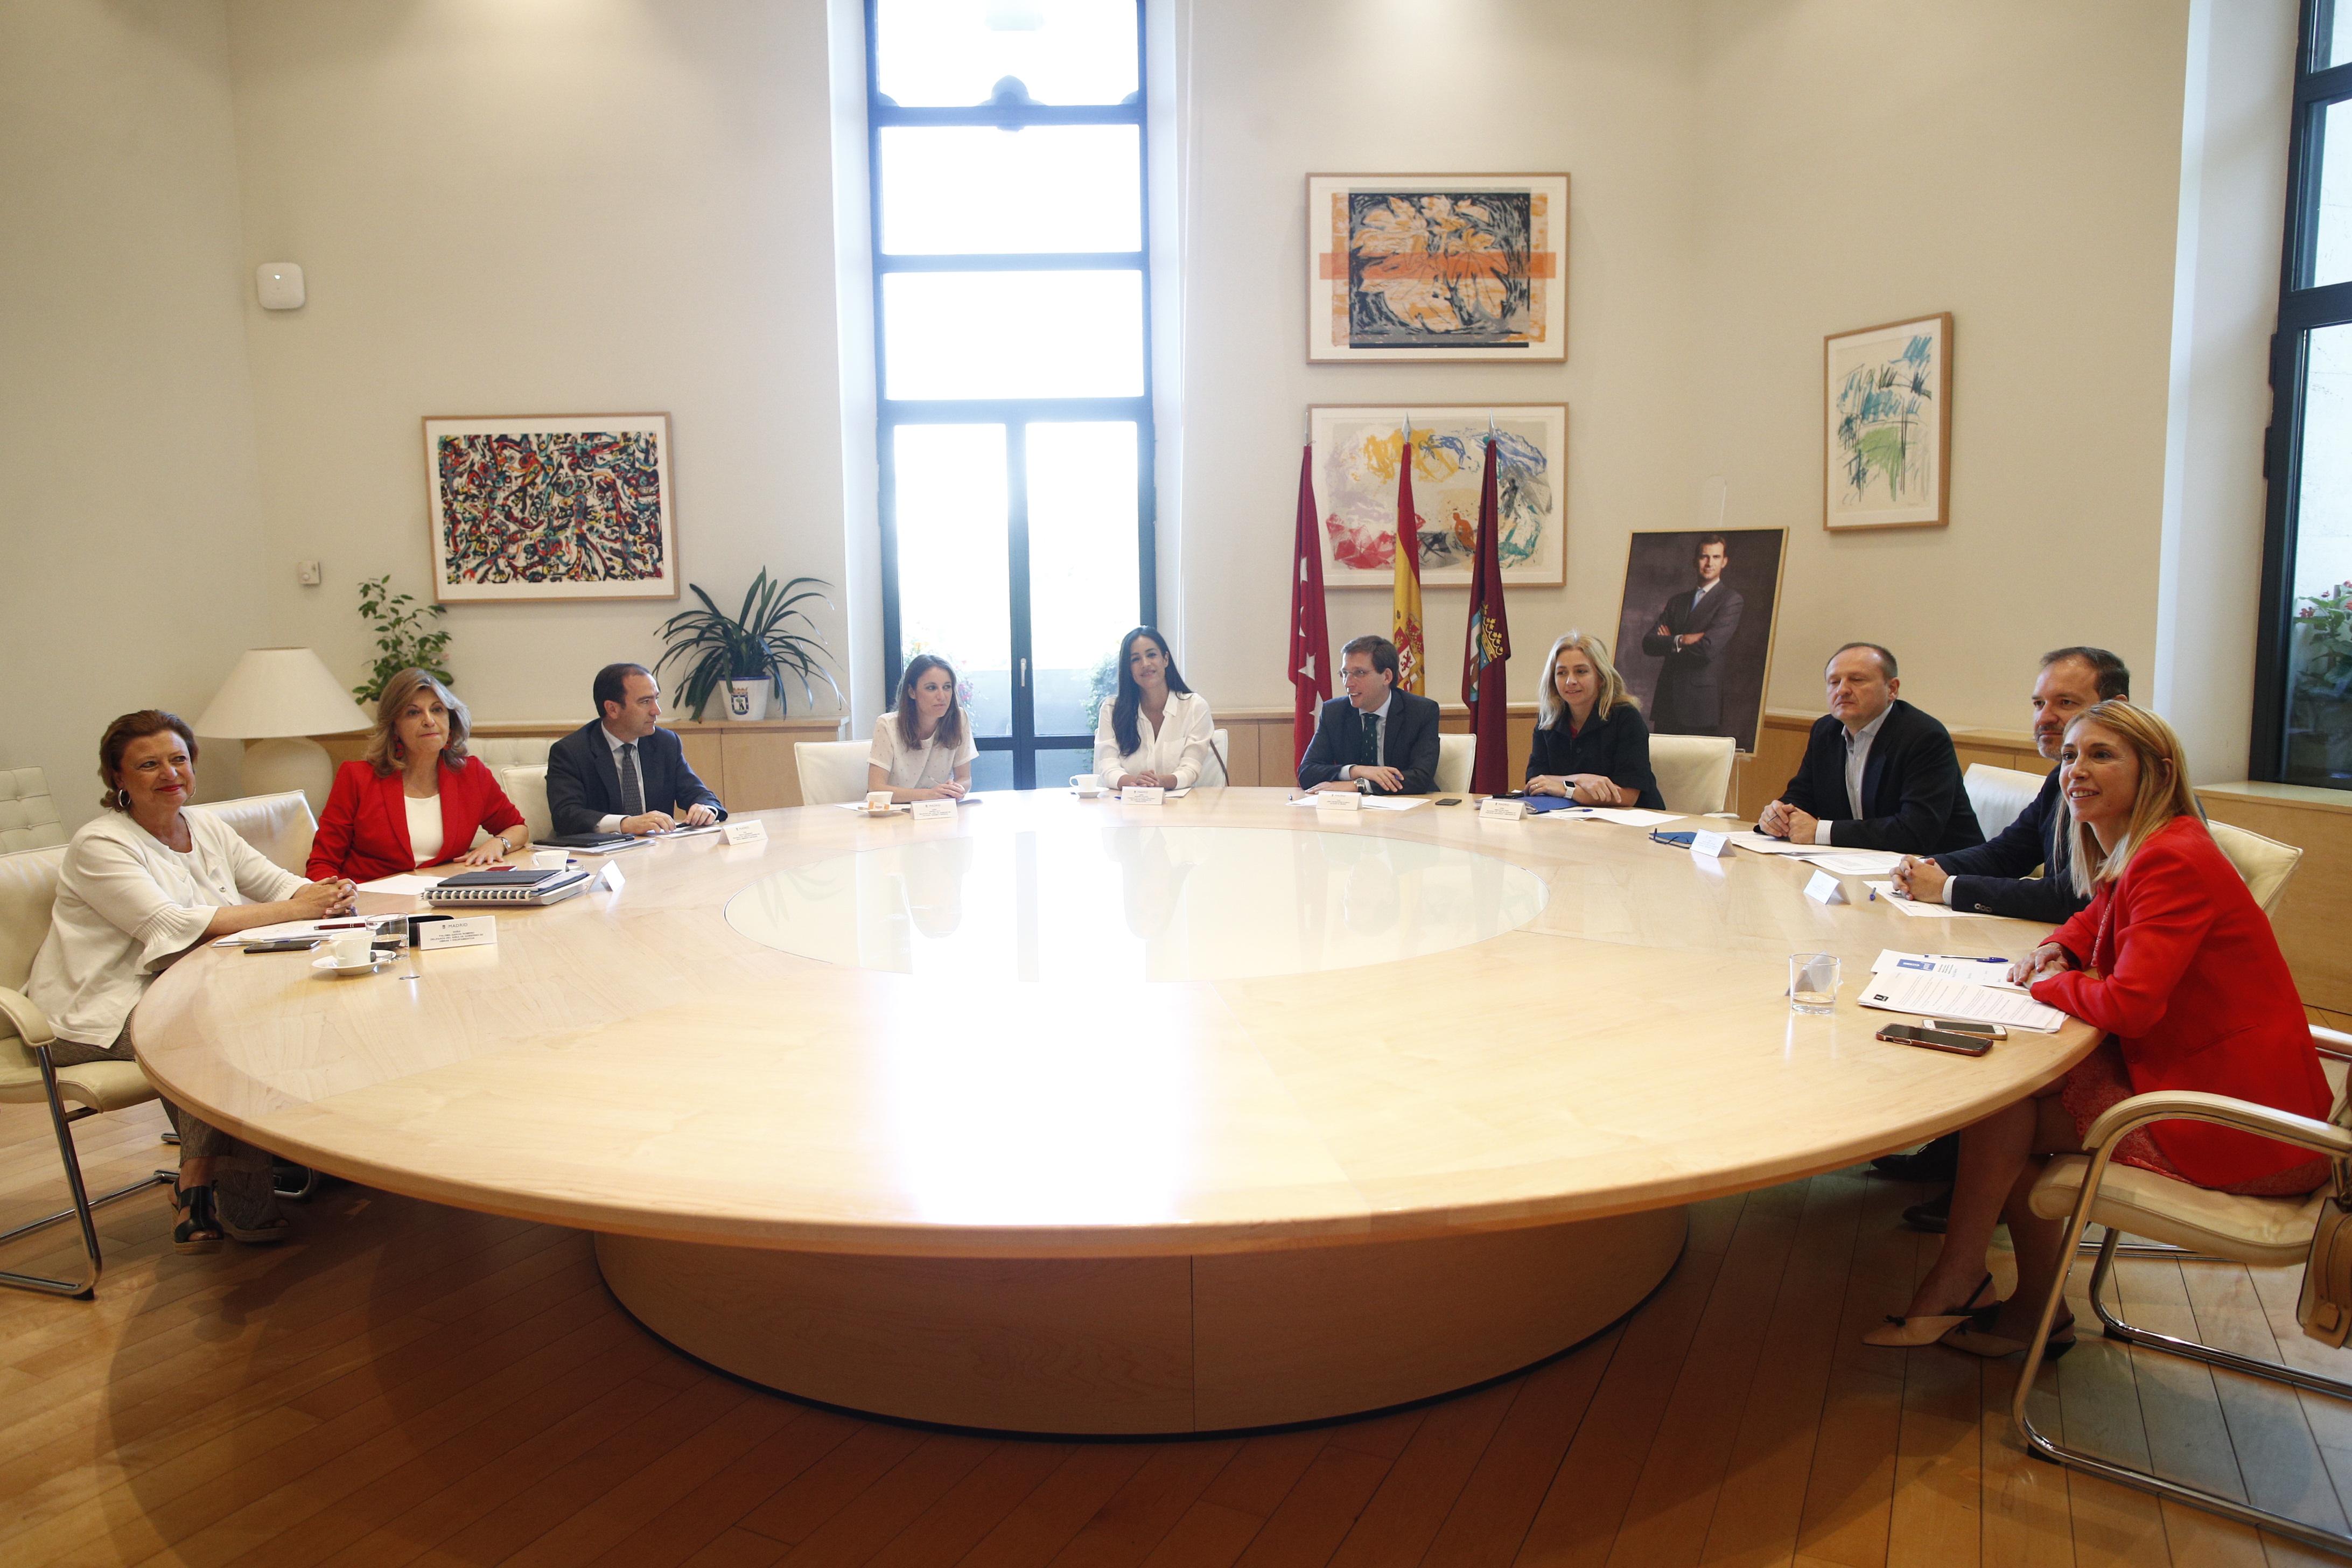 La vicealcaldesa de Madid Begoña Villacís junto al alcalde Jose Luis Martínez Almeida presiden la primera reunión de la Junta de Gobierno municipal de Madrid del mandato de ambos. EP